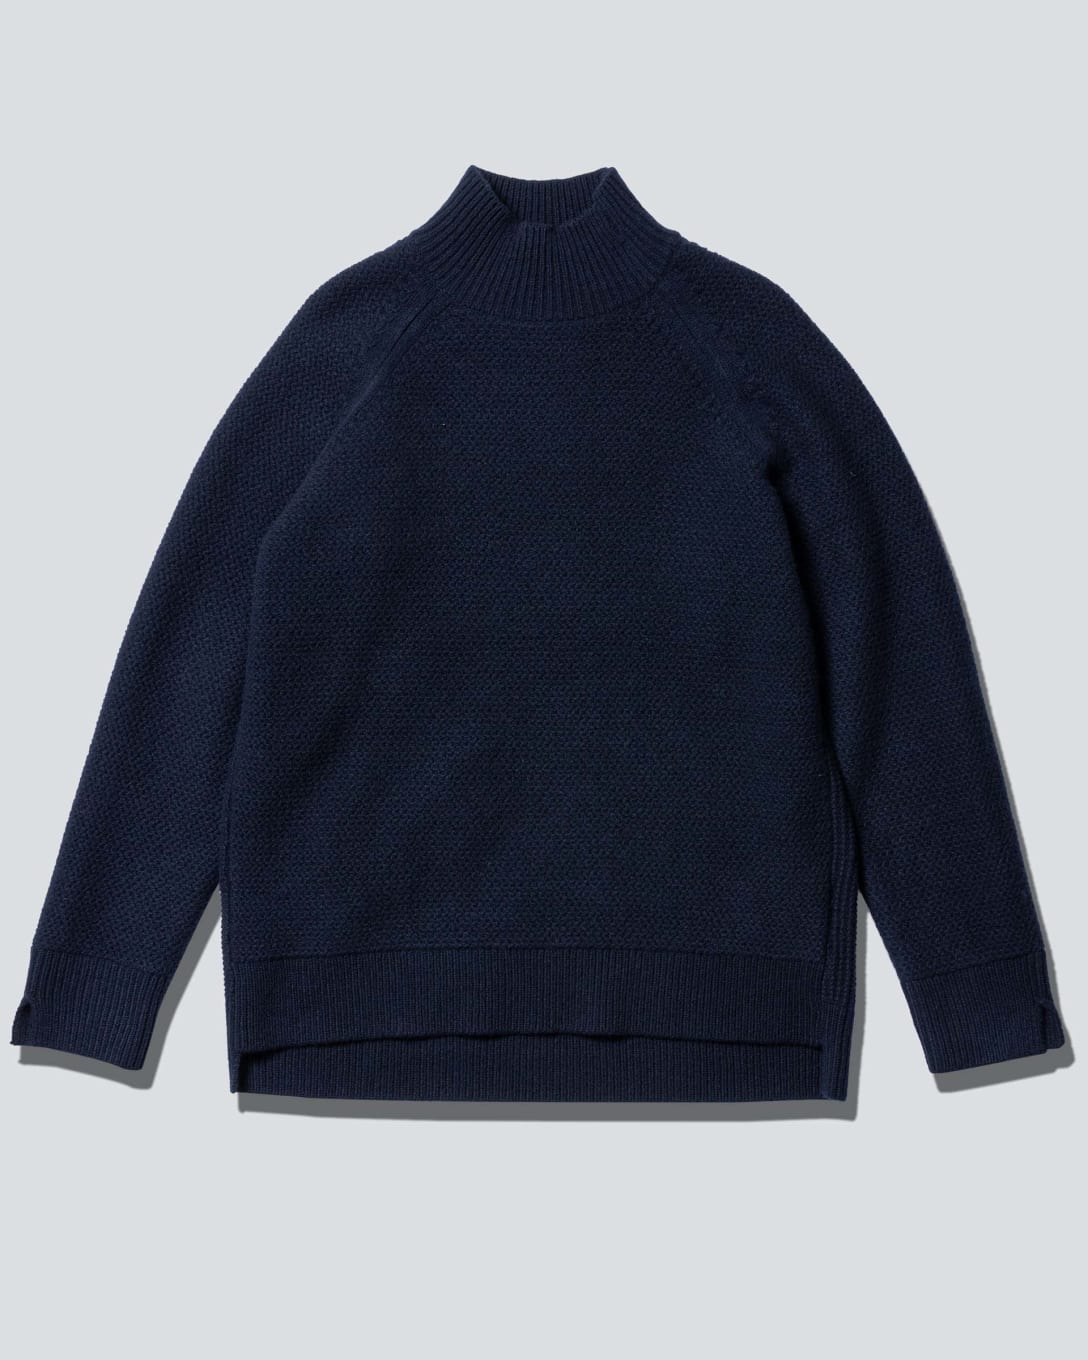 プレミアムラムケーブルハイネックセーター（長袖）（ネイビー、4990円） Image by FASHIONSNAP